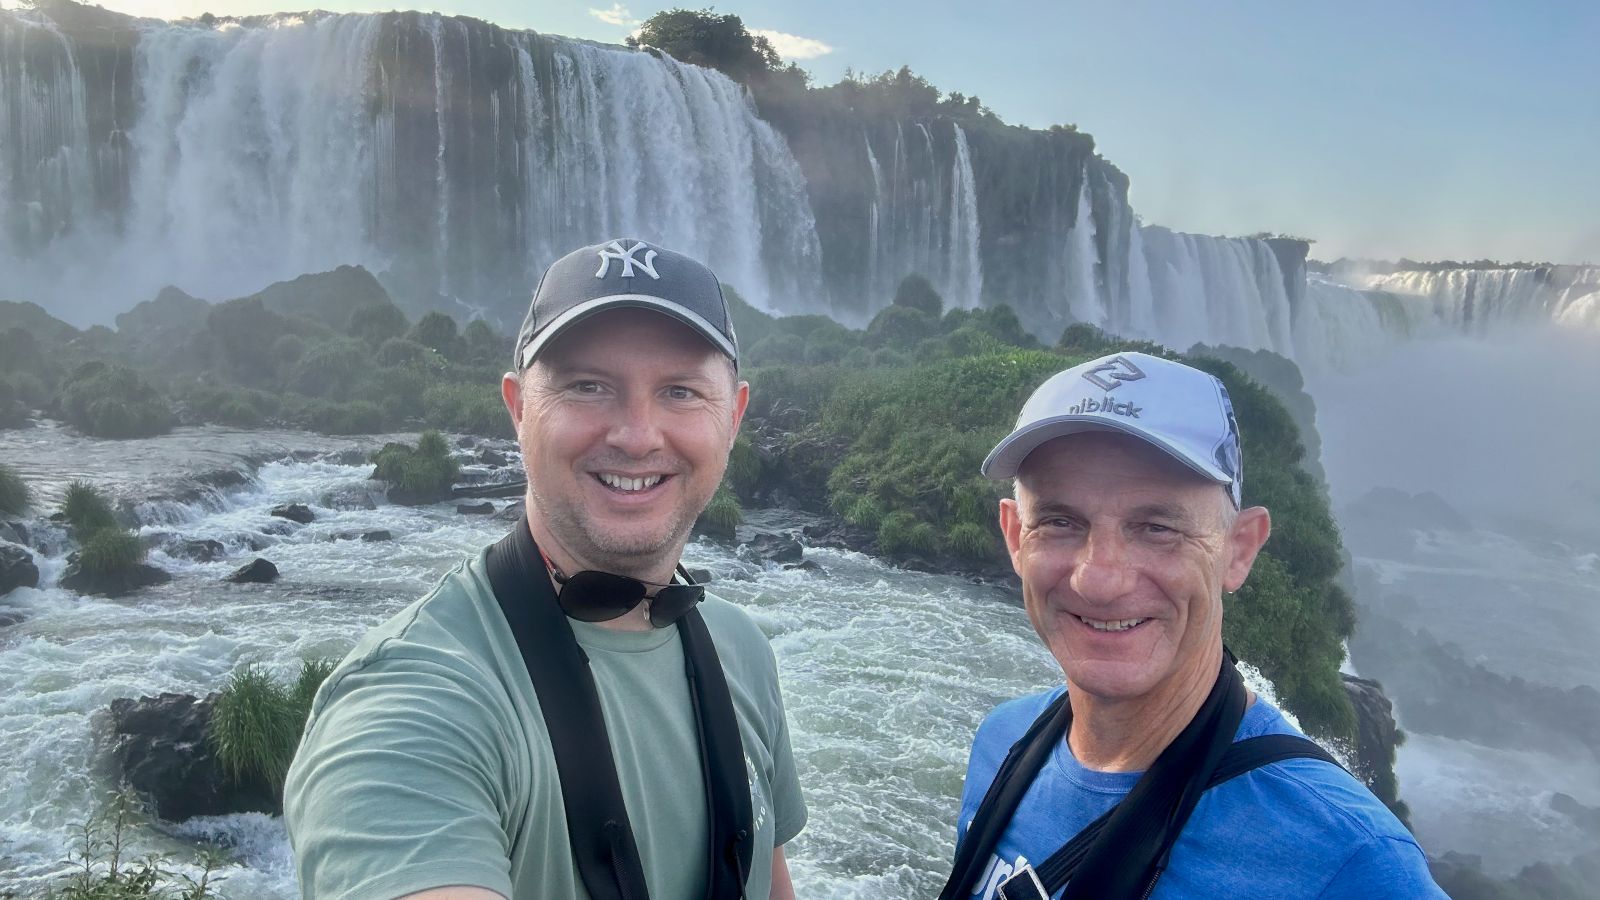 magnificent Iguazu Falls